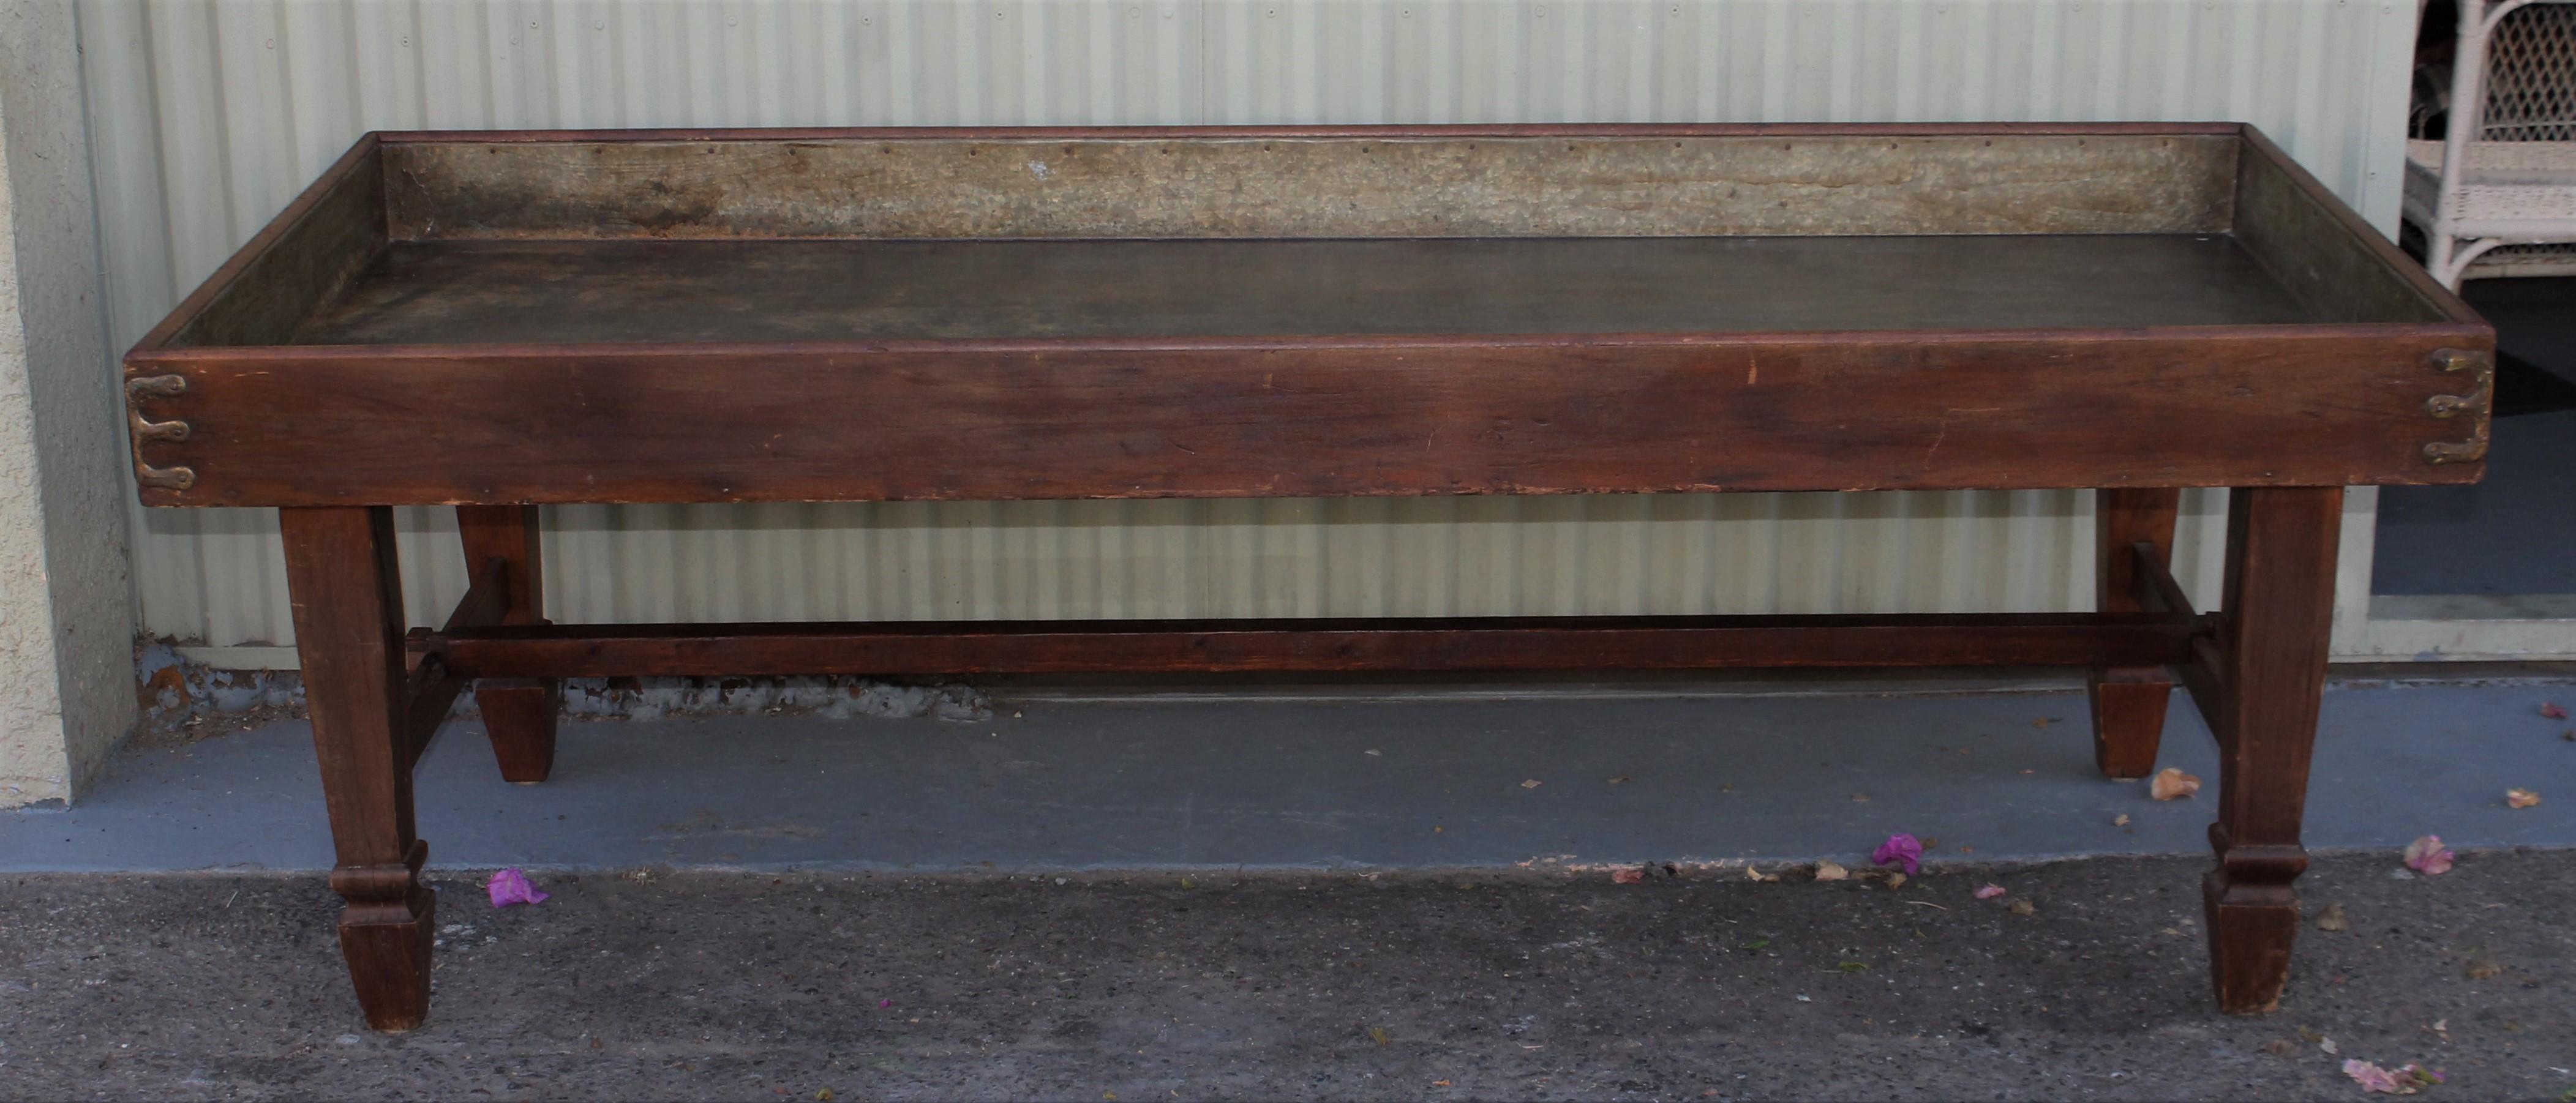 Cette table de triage en pin du 19ème siècle a une surface ancienne et un revêtement en étain qui est d'origine. Auparavant, les pieds se repliaient, mais ils ont été rendus fixes et robustes. Il possède toute la quincaillerie et les charnières